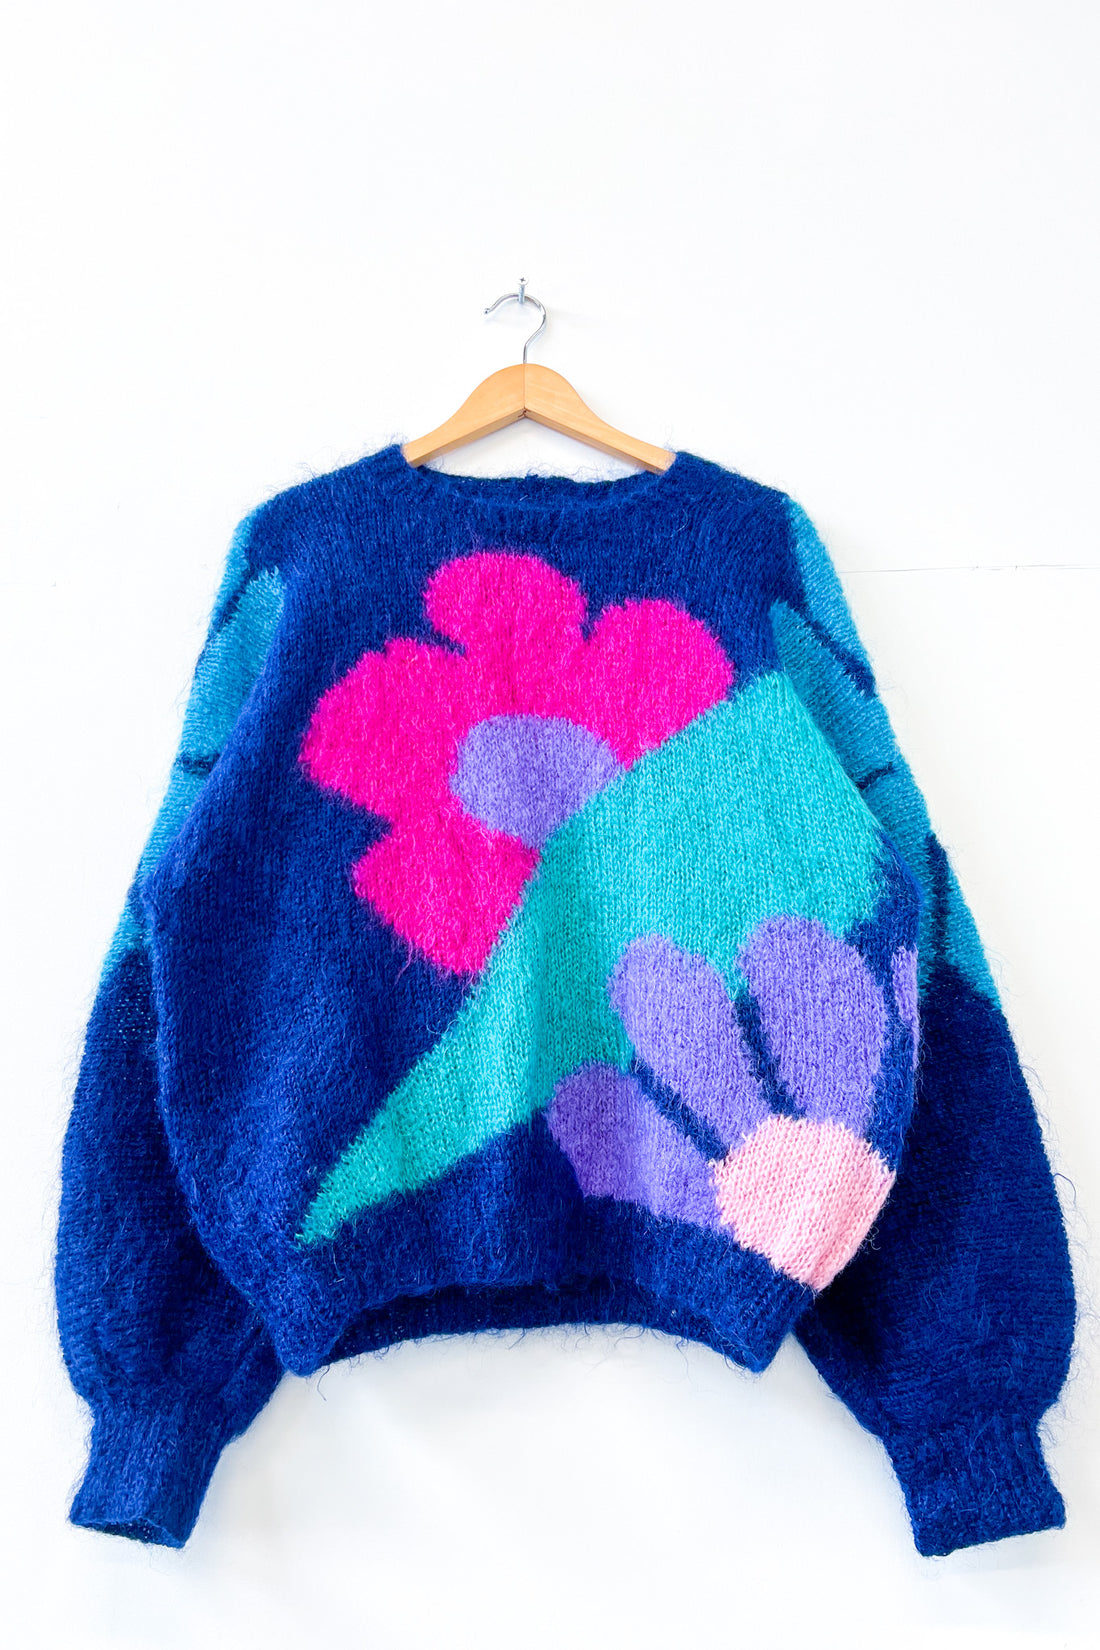 Vintage Hand Knitted Flower Jumper